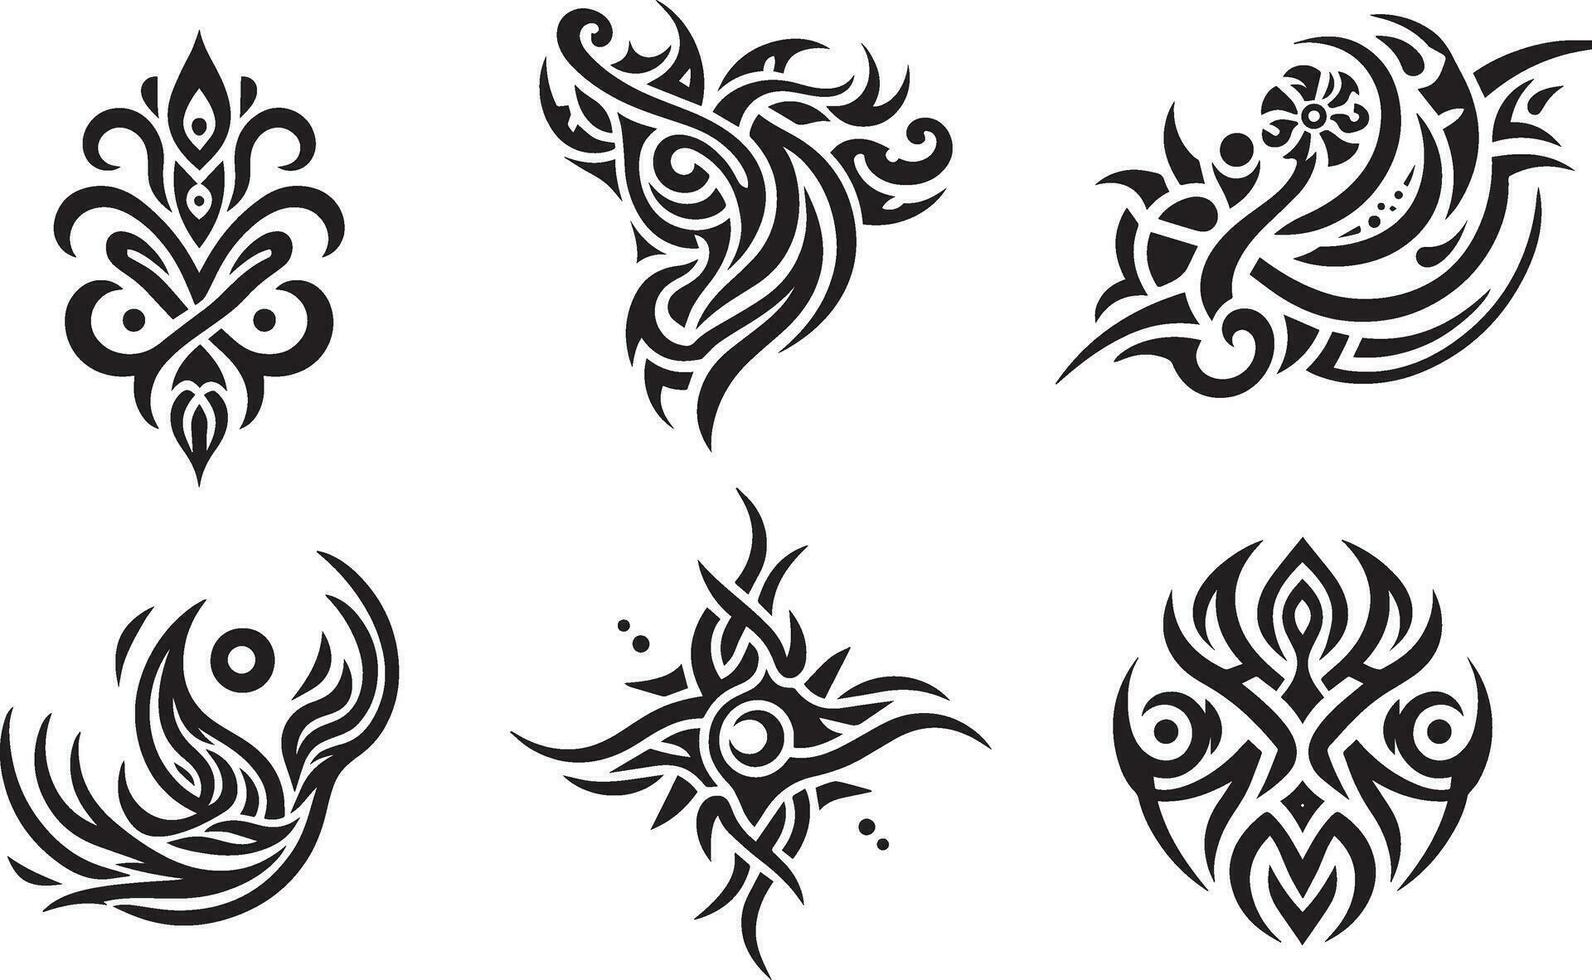 Tribal tattoo design vector art illustration 11